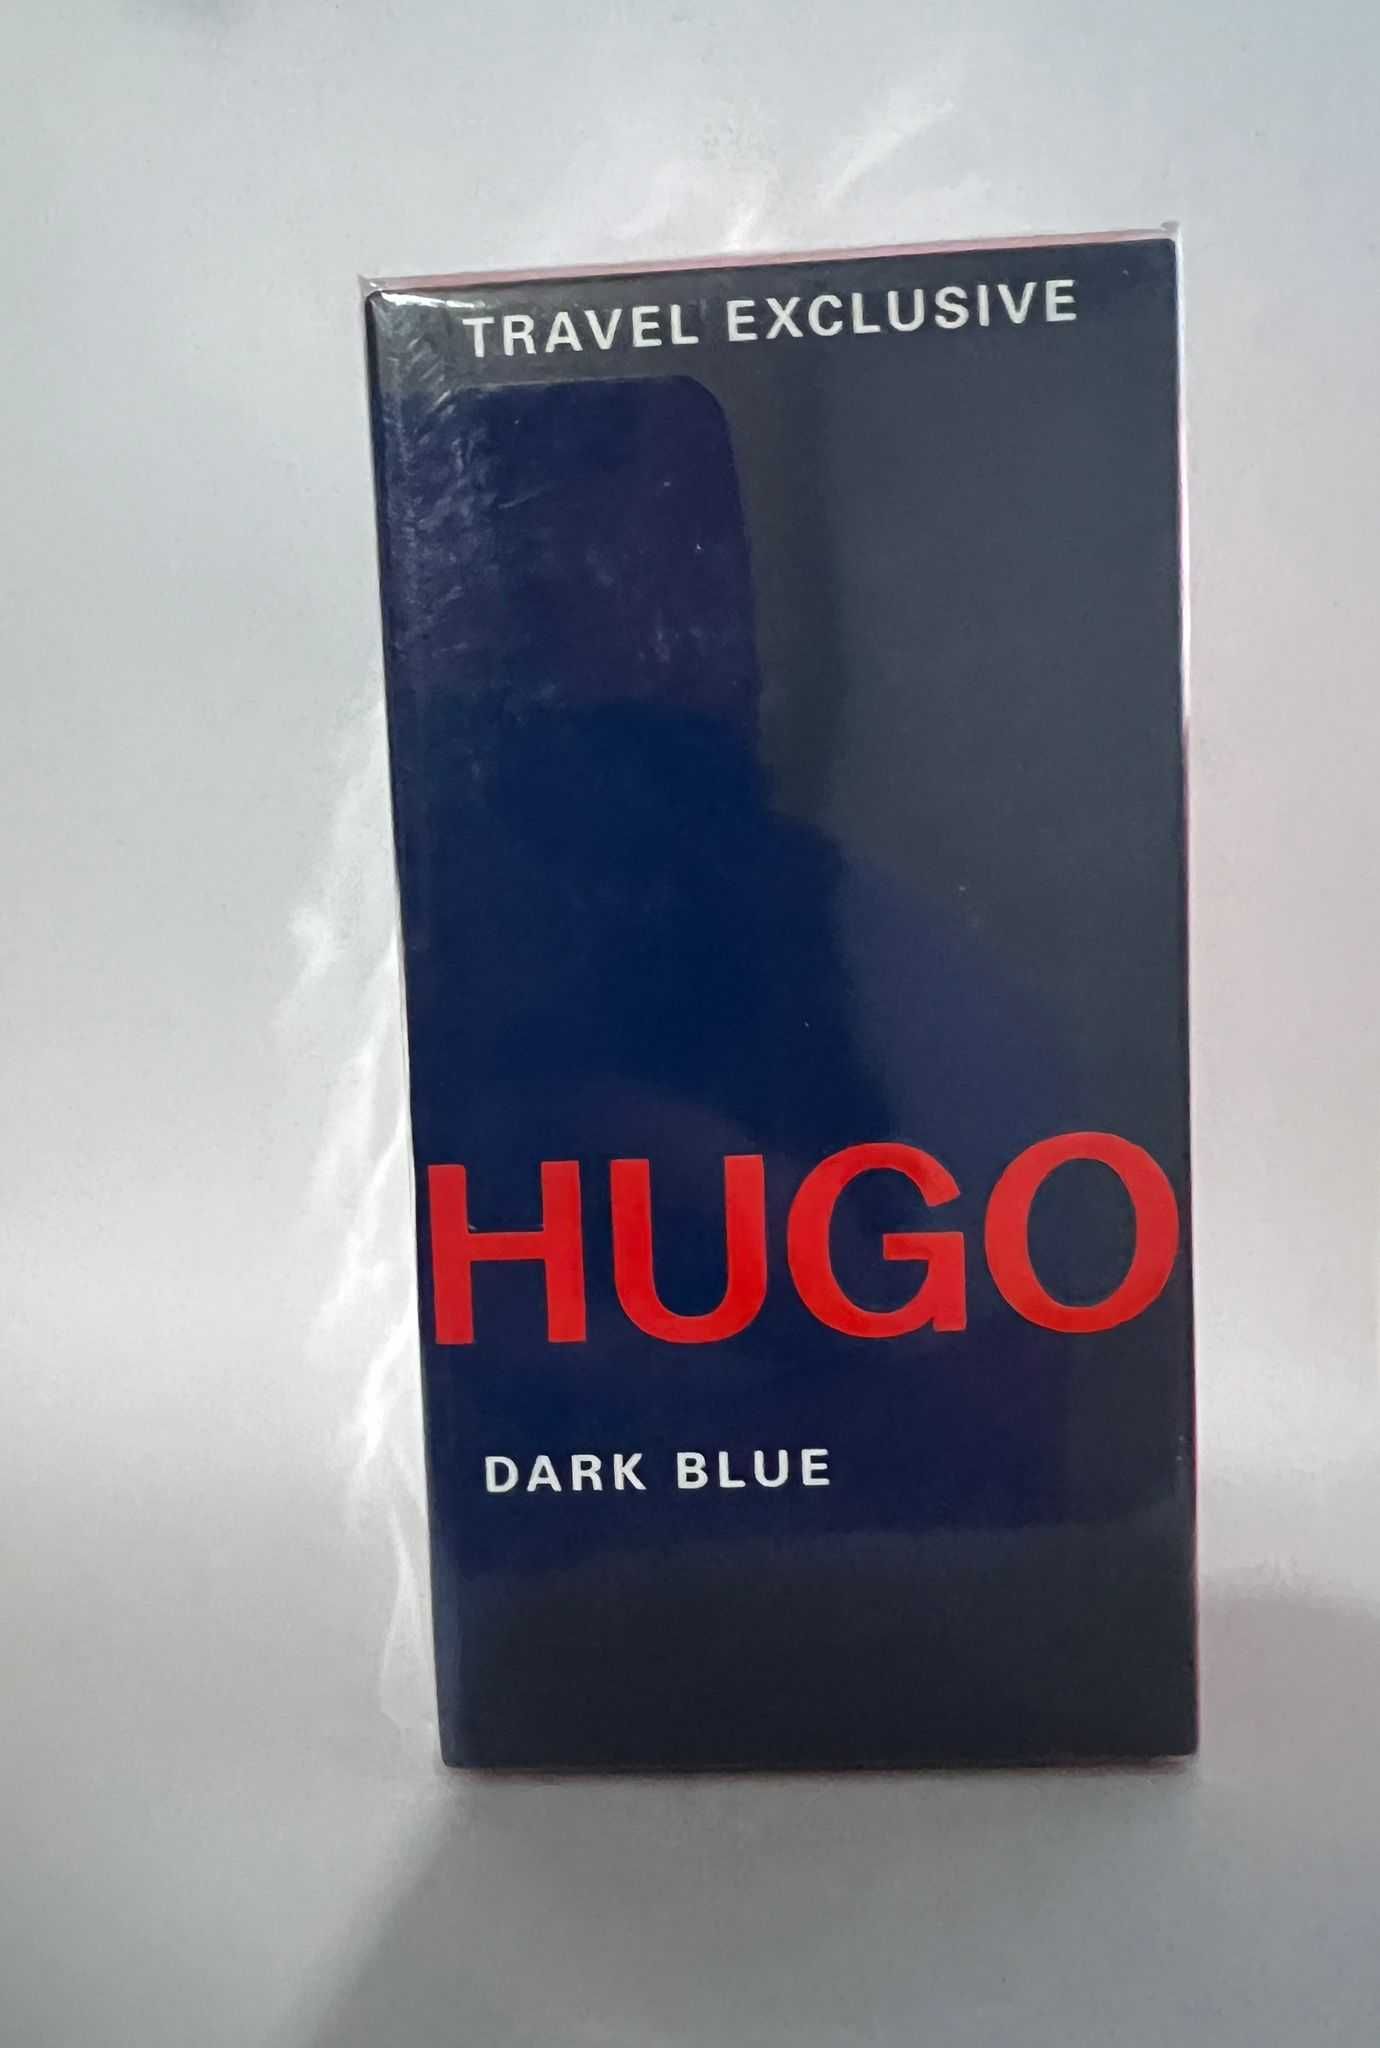 Parfumuri Hugo Boss